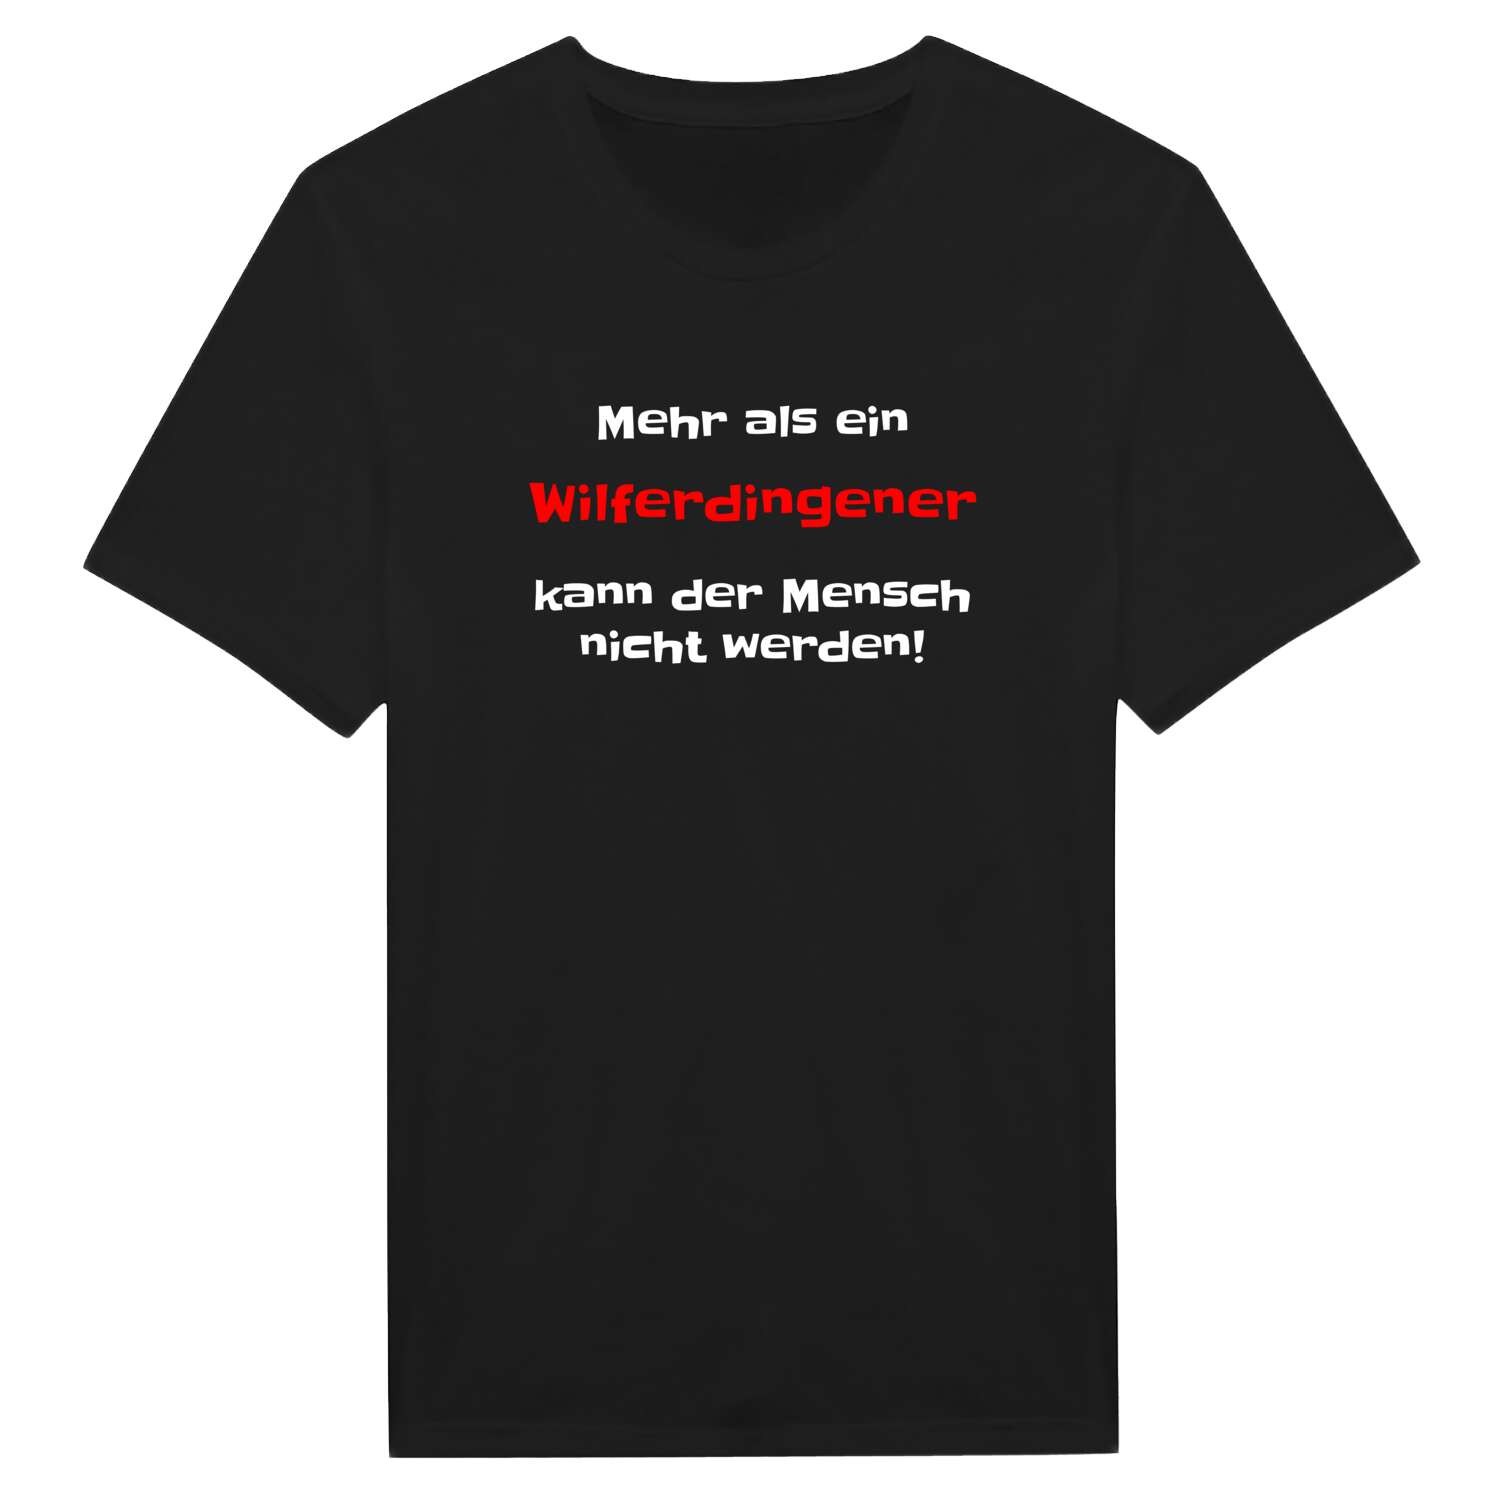 Wilferdingen T-Shirt »Mehr als ein«